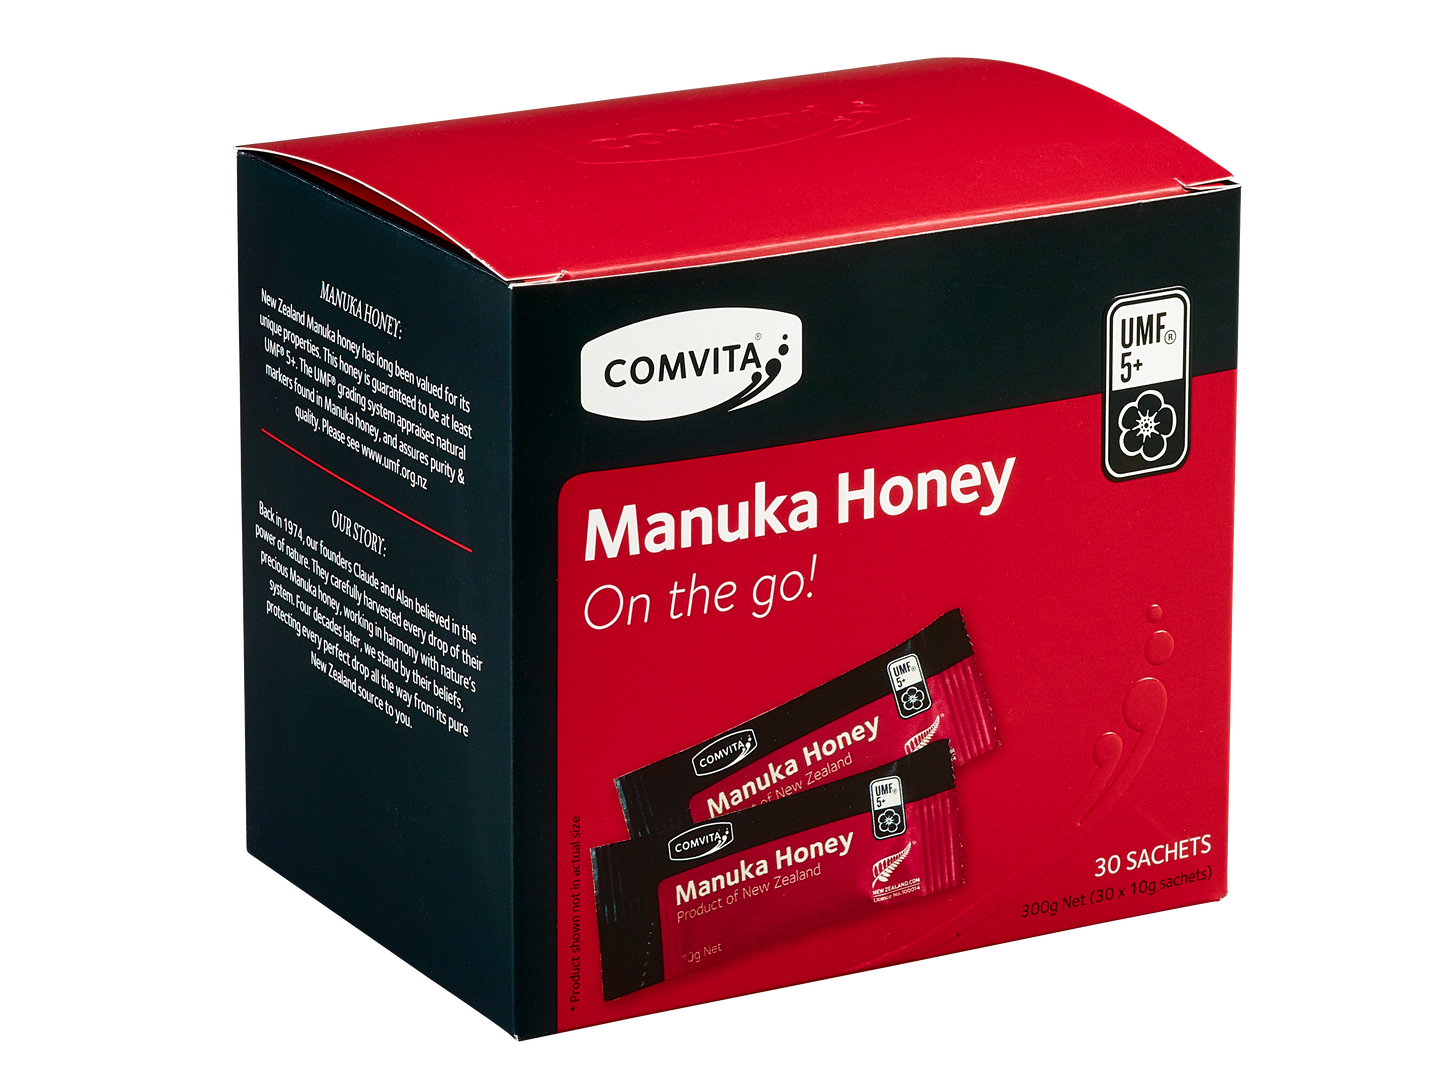 Comvita Manuka Honey UMF™ 5+, 30 sachets.